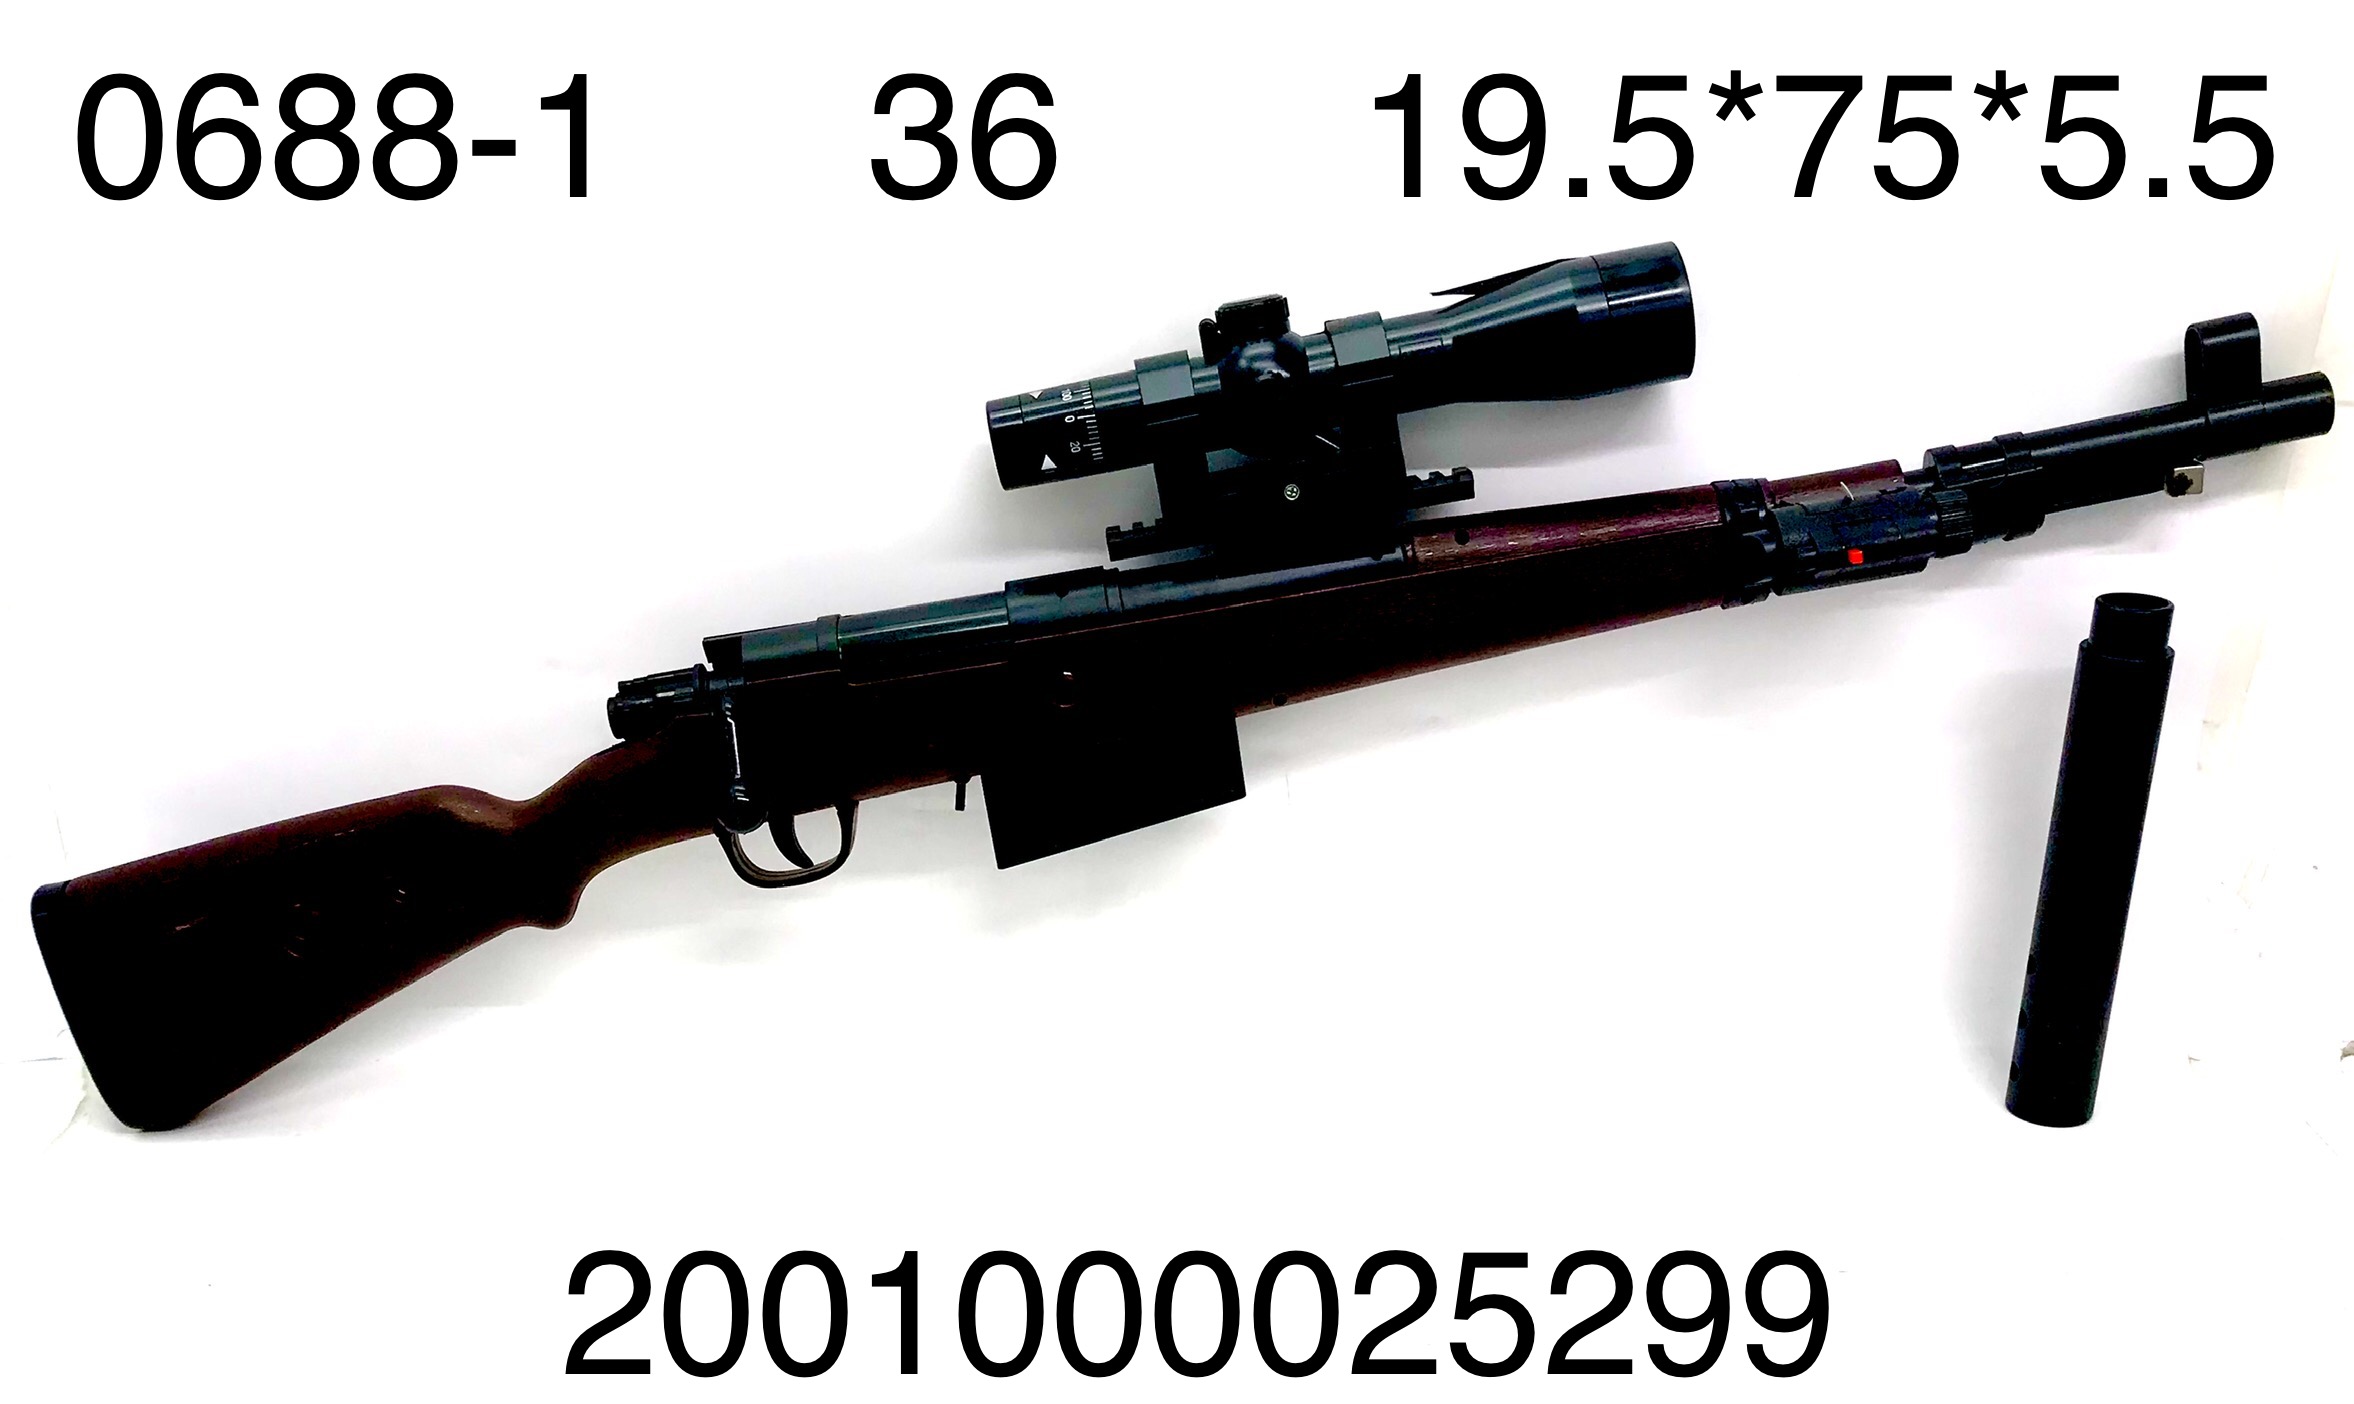 Ружье 0688-1 снайперское в коробке - Ижевск 